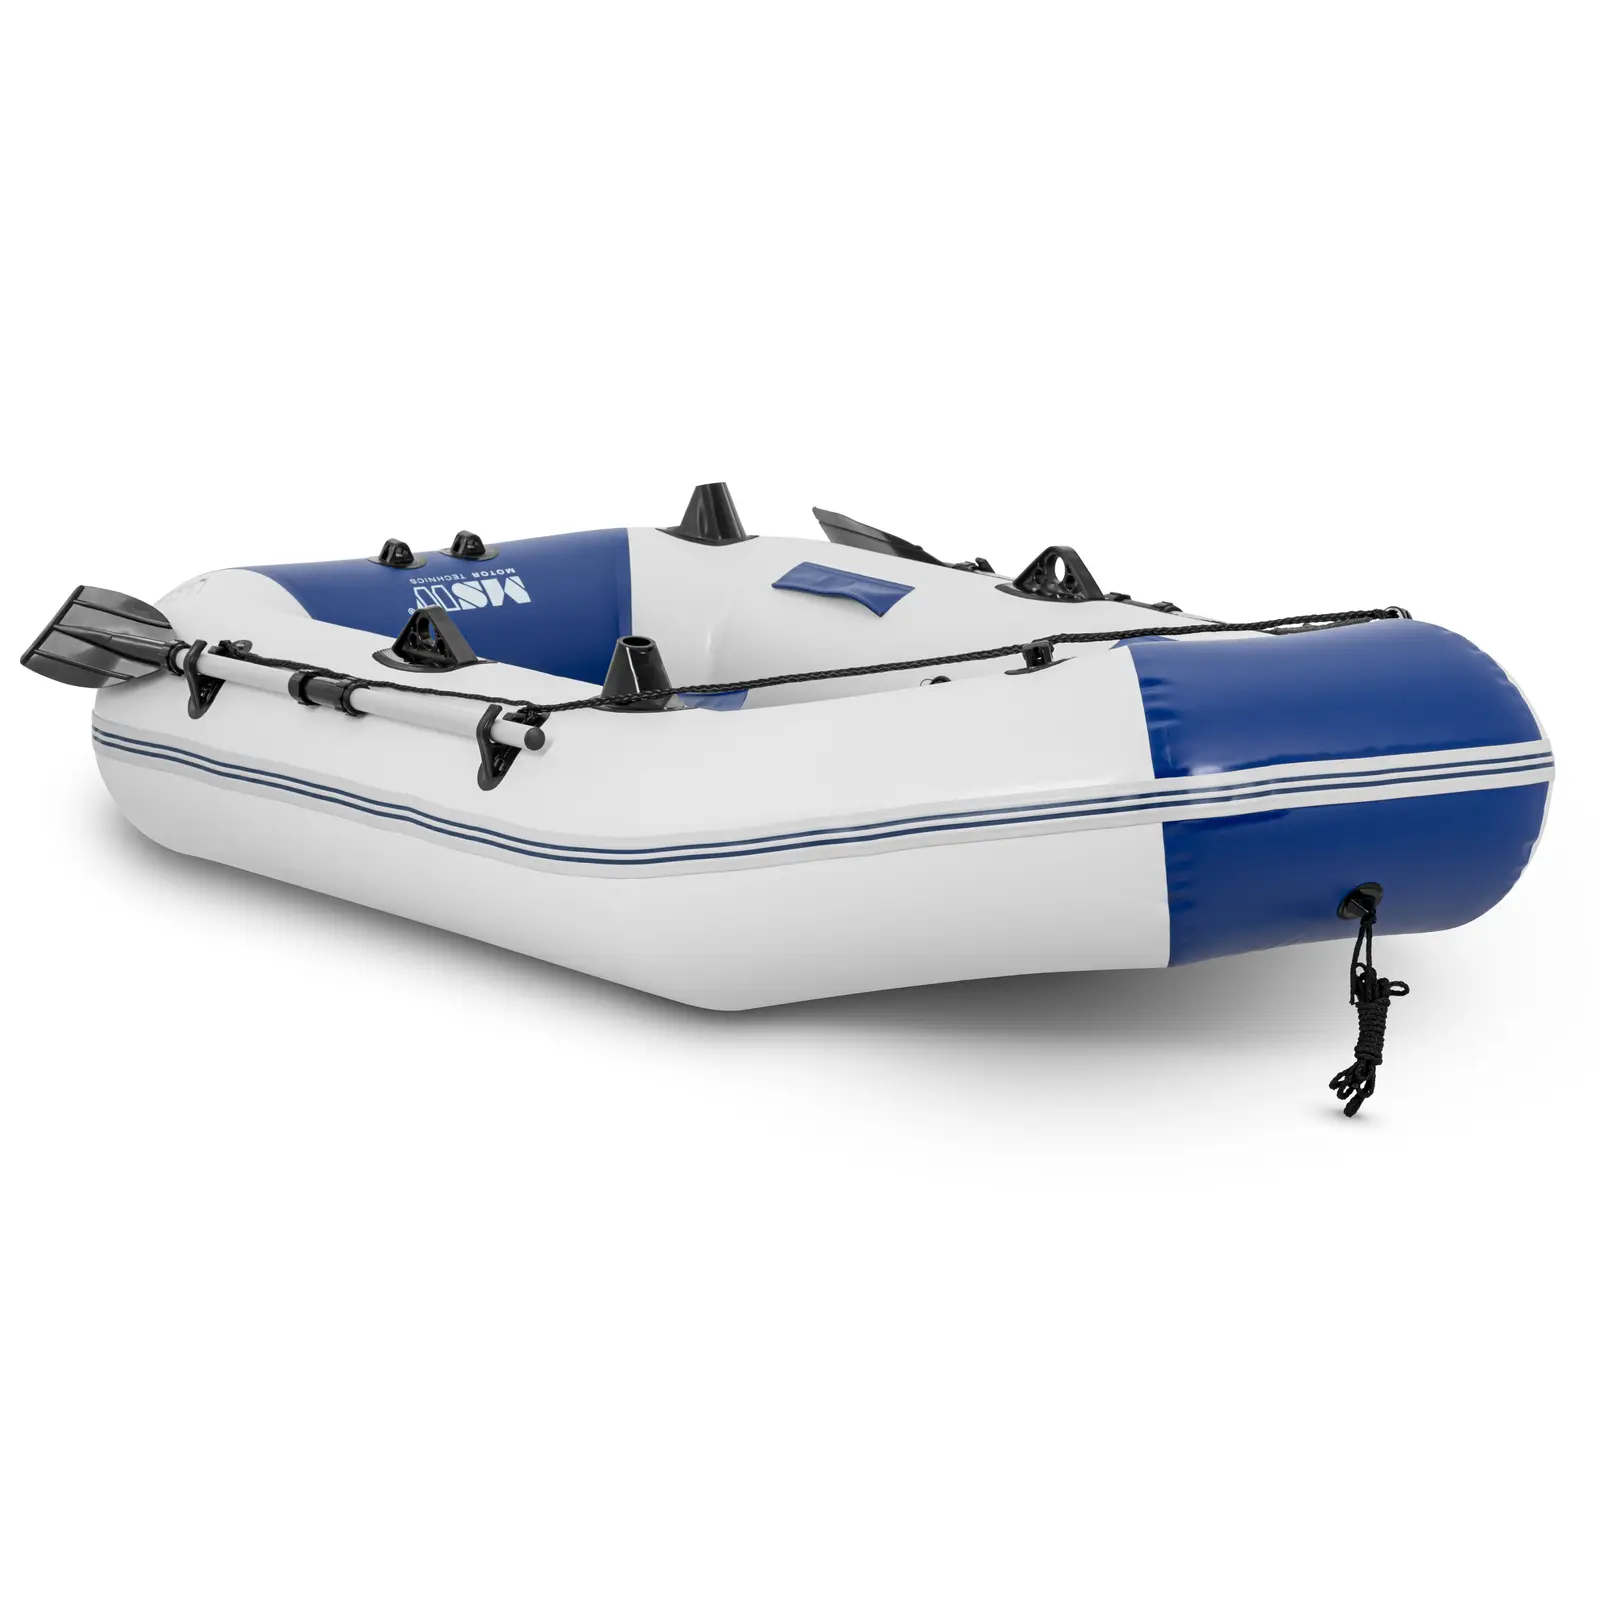 Gummibåt - Blå/vit - 235 kg - Fiskespöhållare - 3 personer